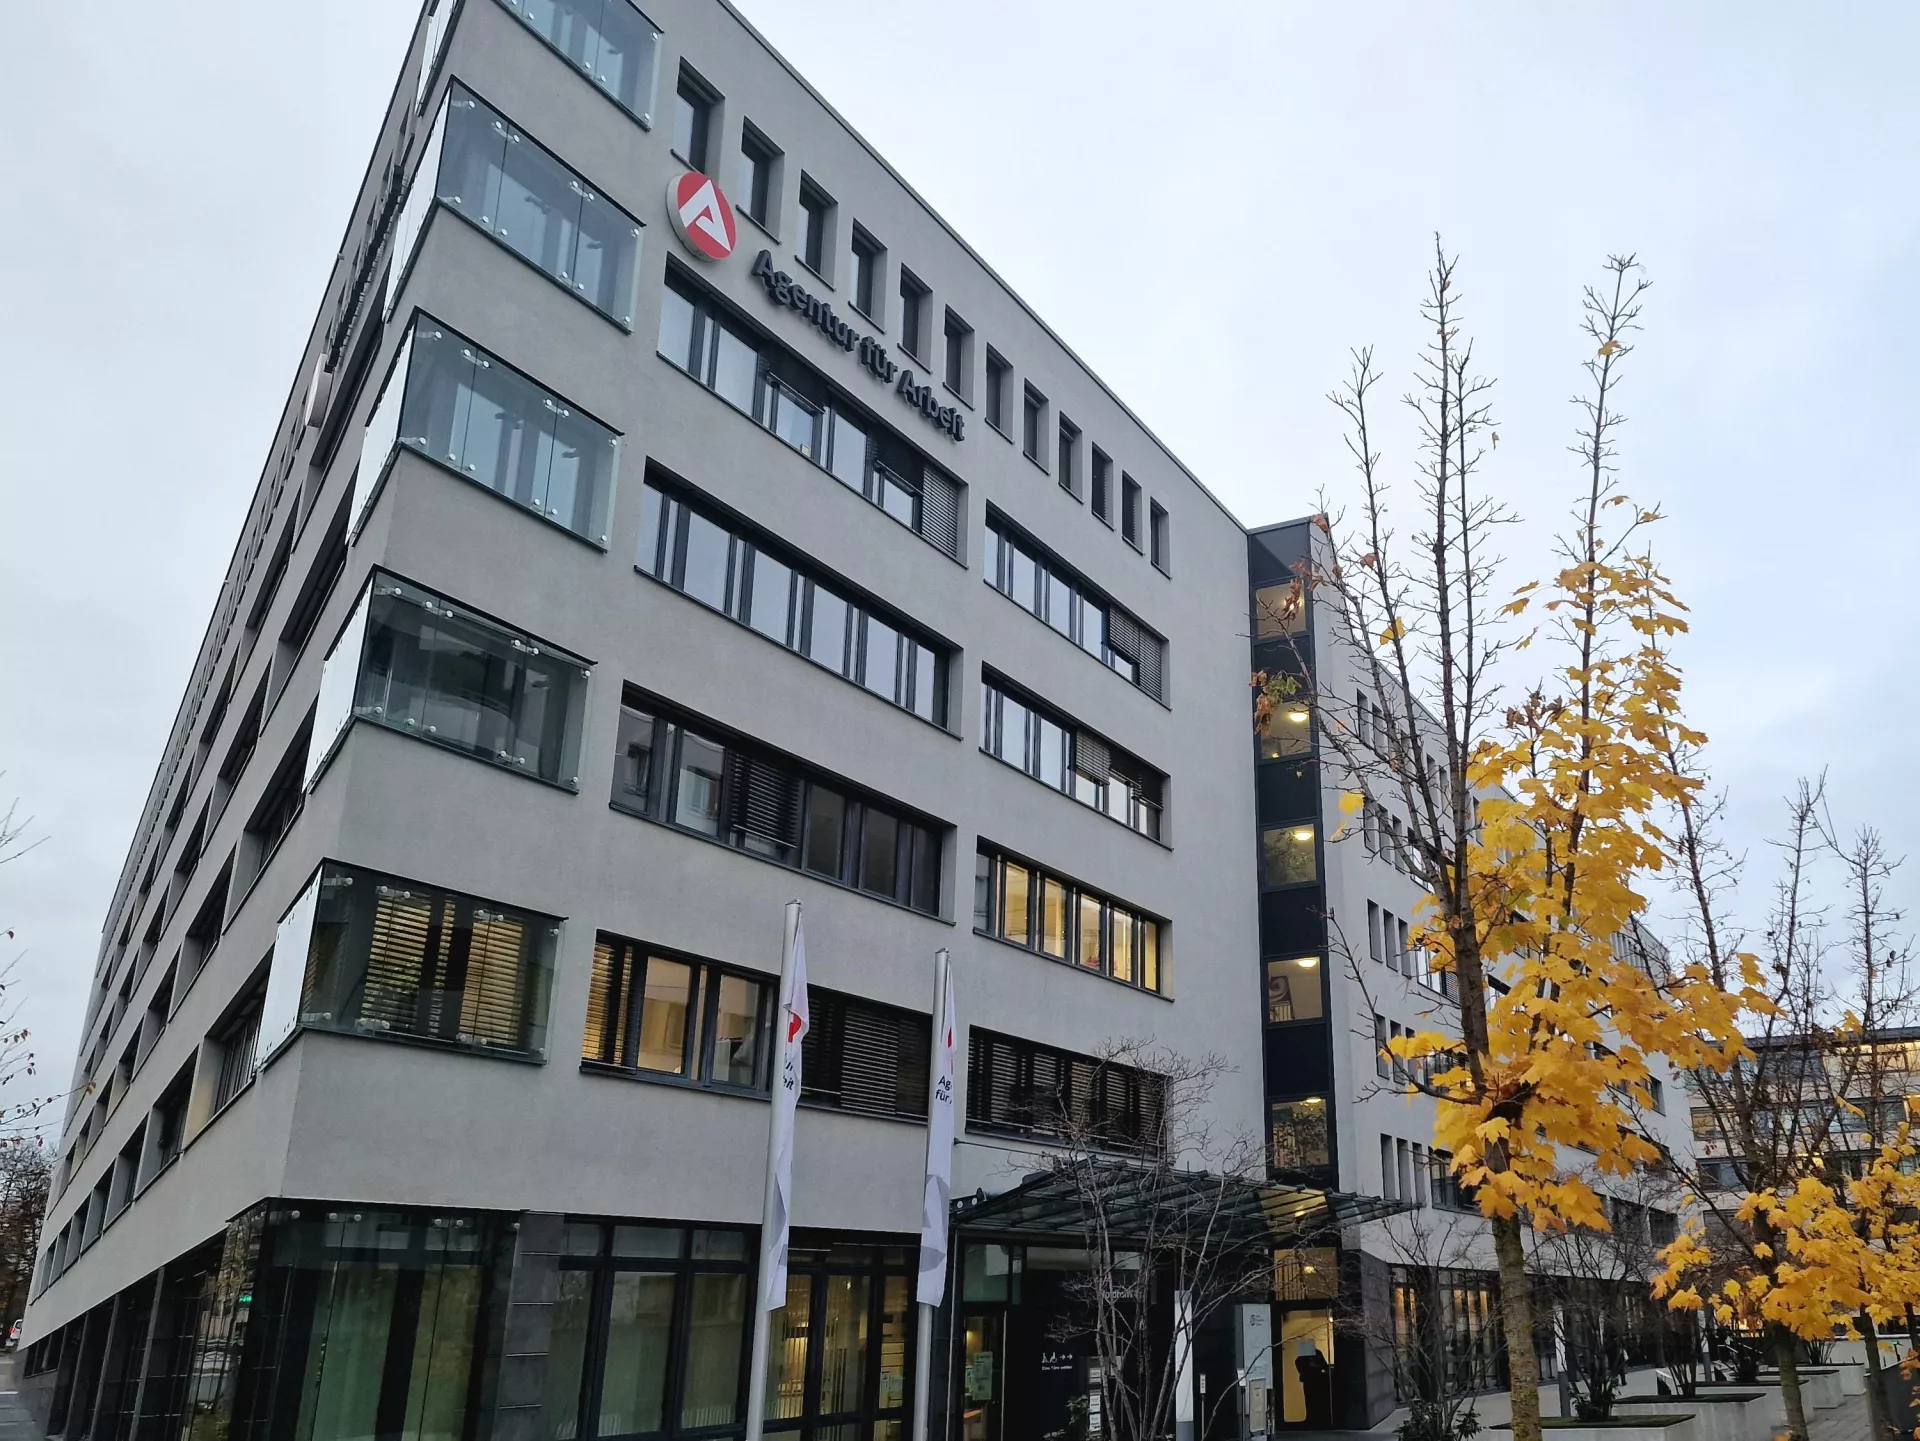 Agentur für Arbeit Stuttgart im Herbst